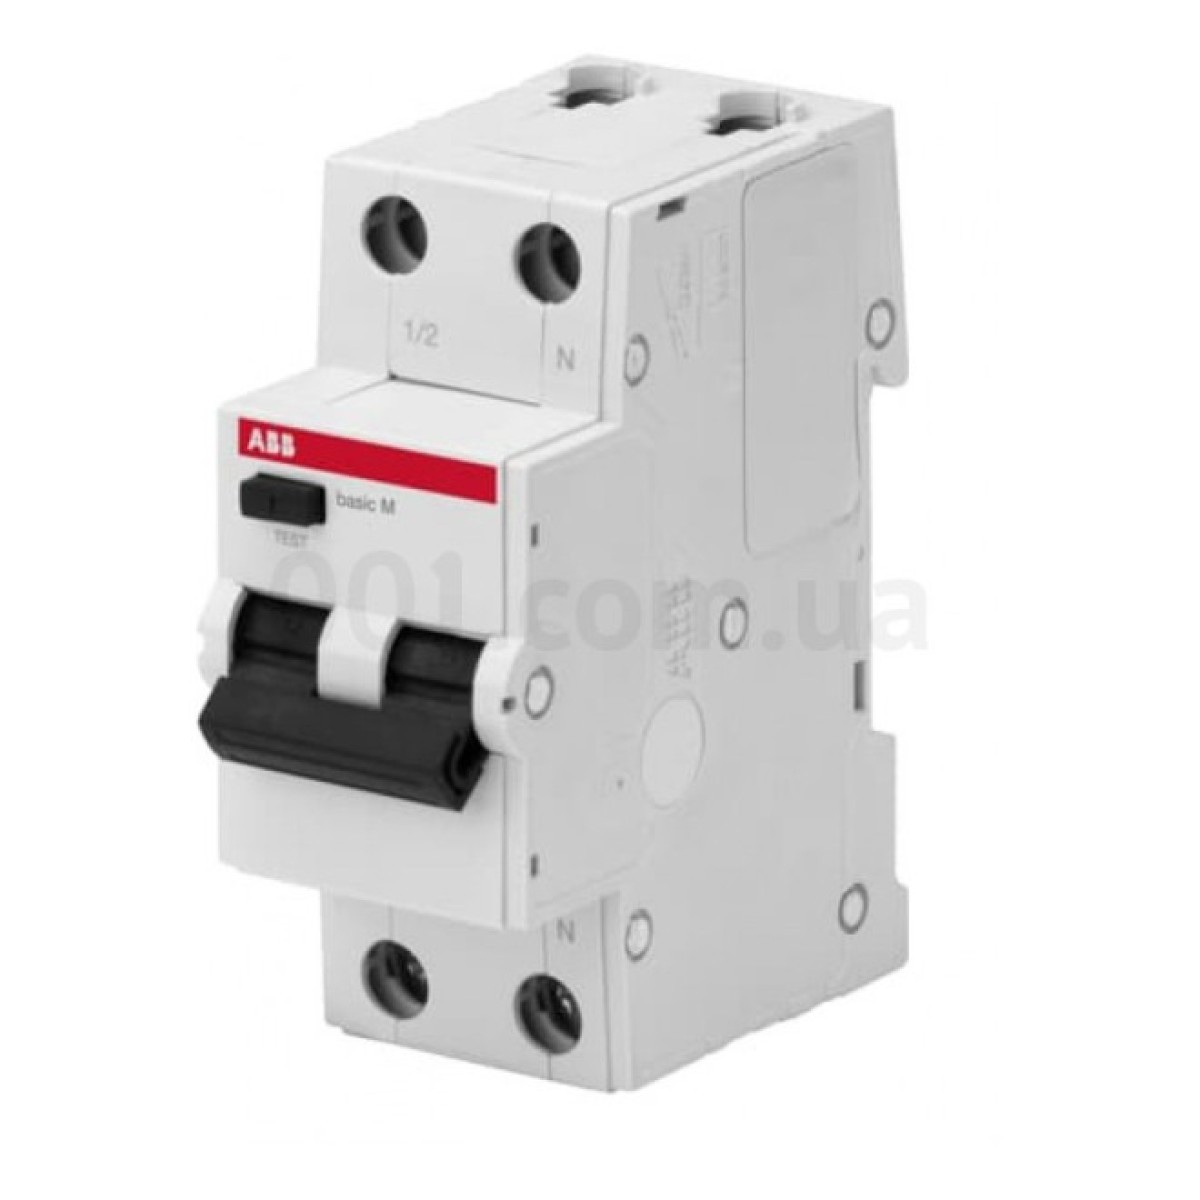 Автоматичний вимикач диференційного струму BMR415C20 1P+N/20А/30мА тип AC BASIC M, ABB 98_98.jpg - фото 1